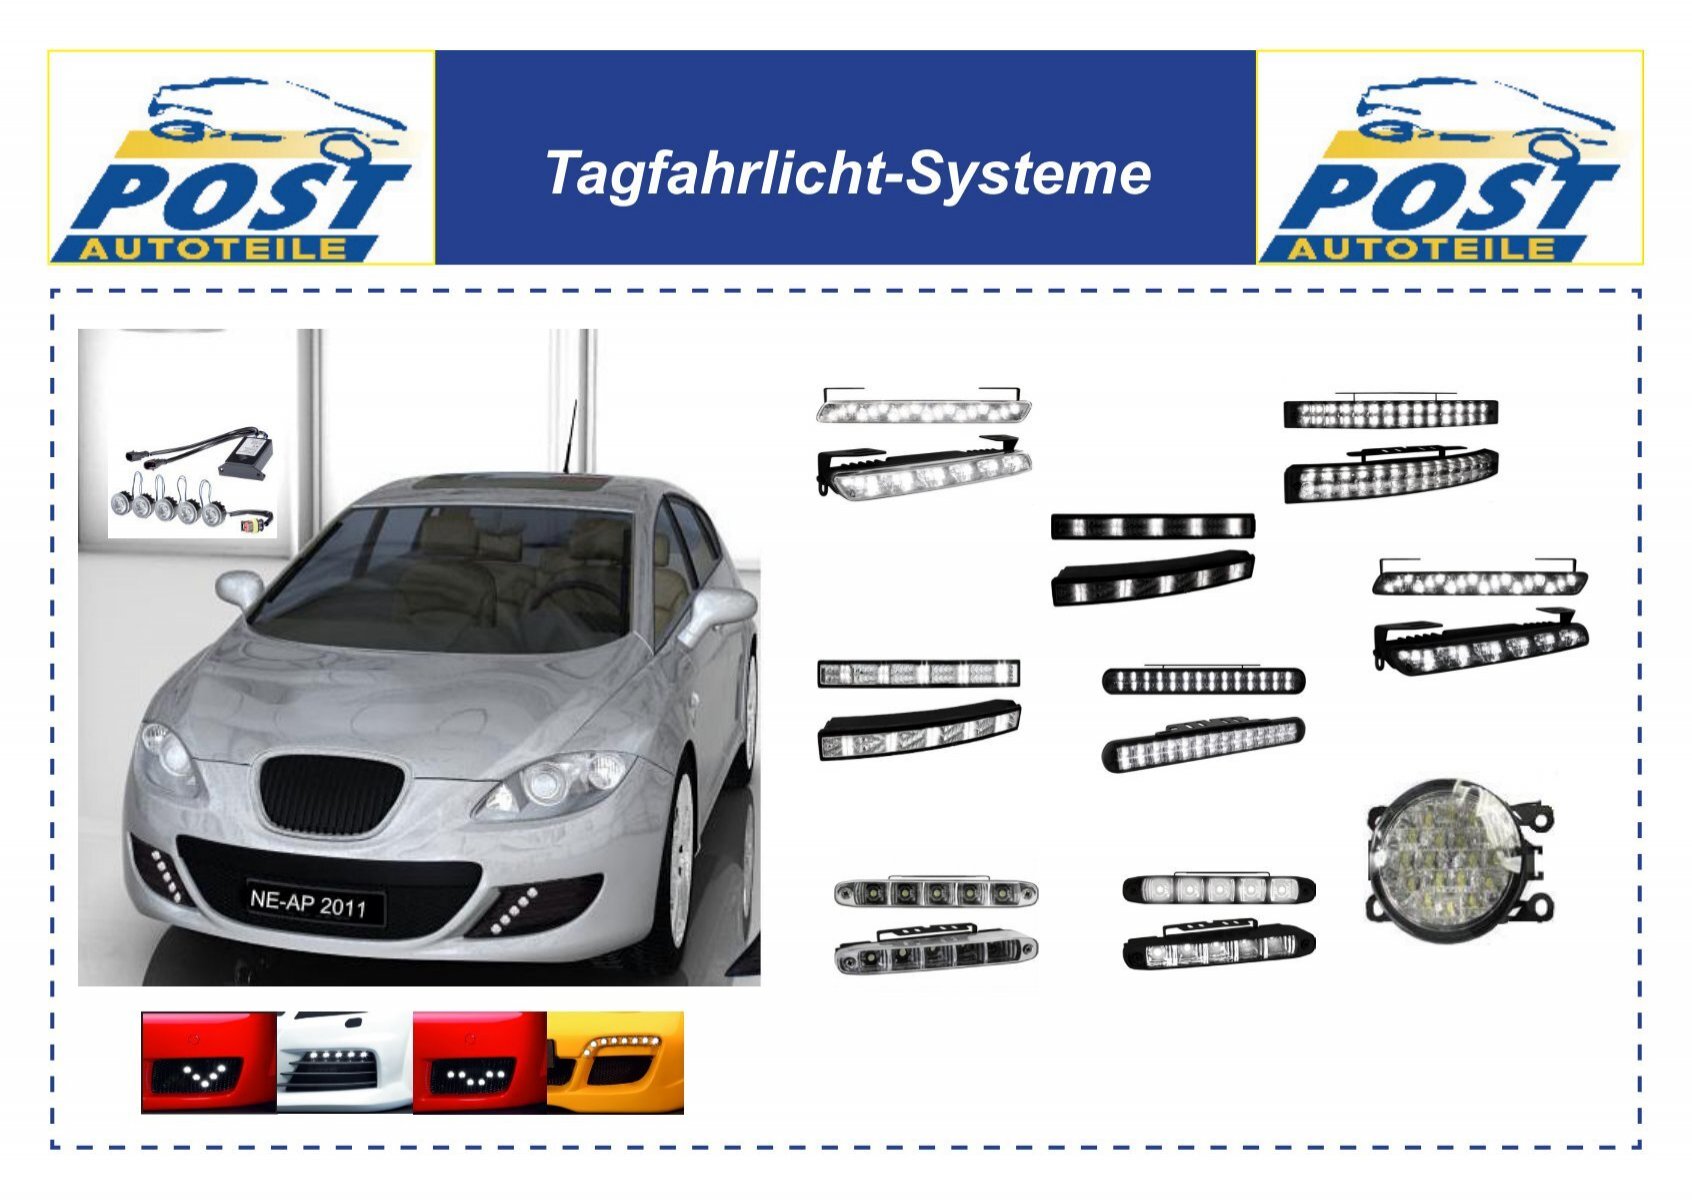 Tagfahrlicht-Systeme - Autoteile Post Online-Shop